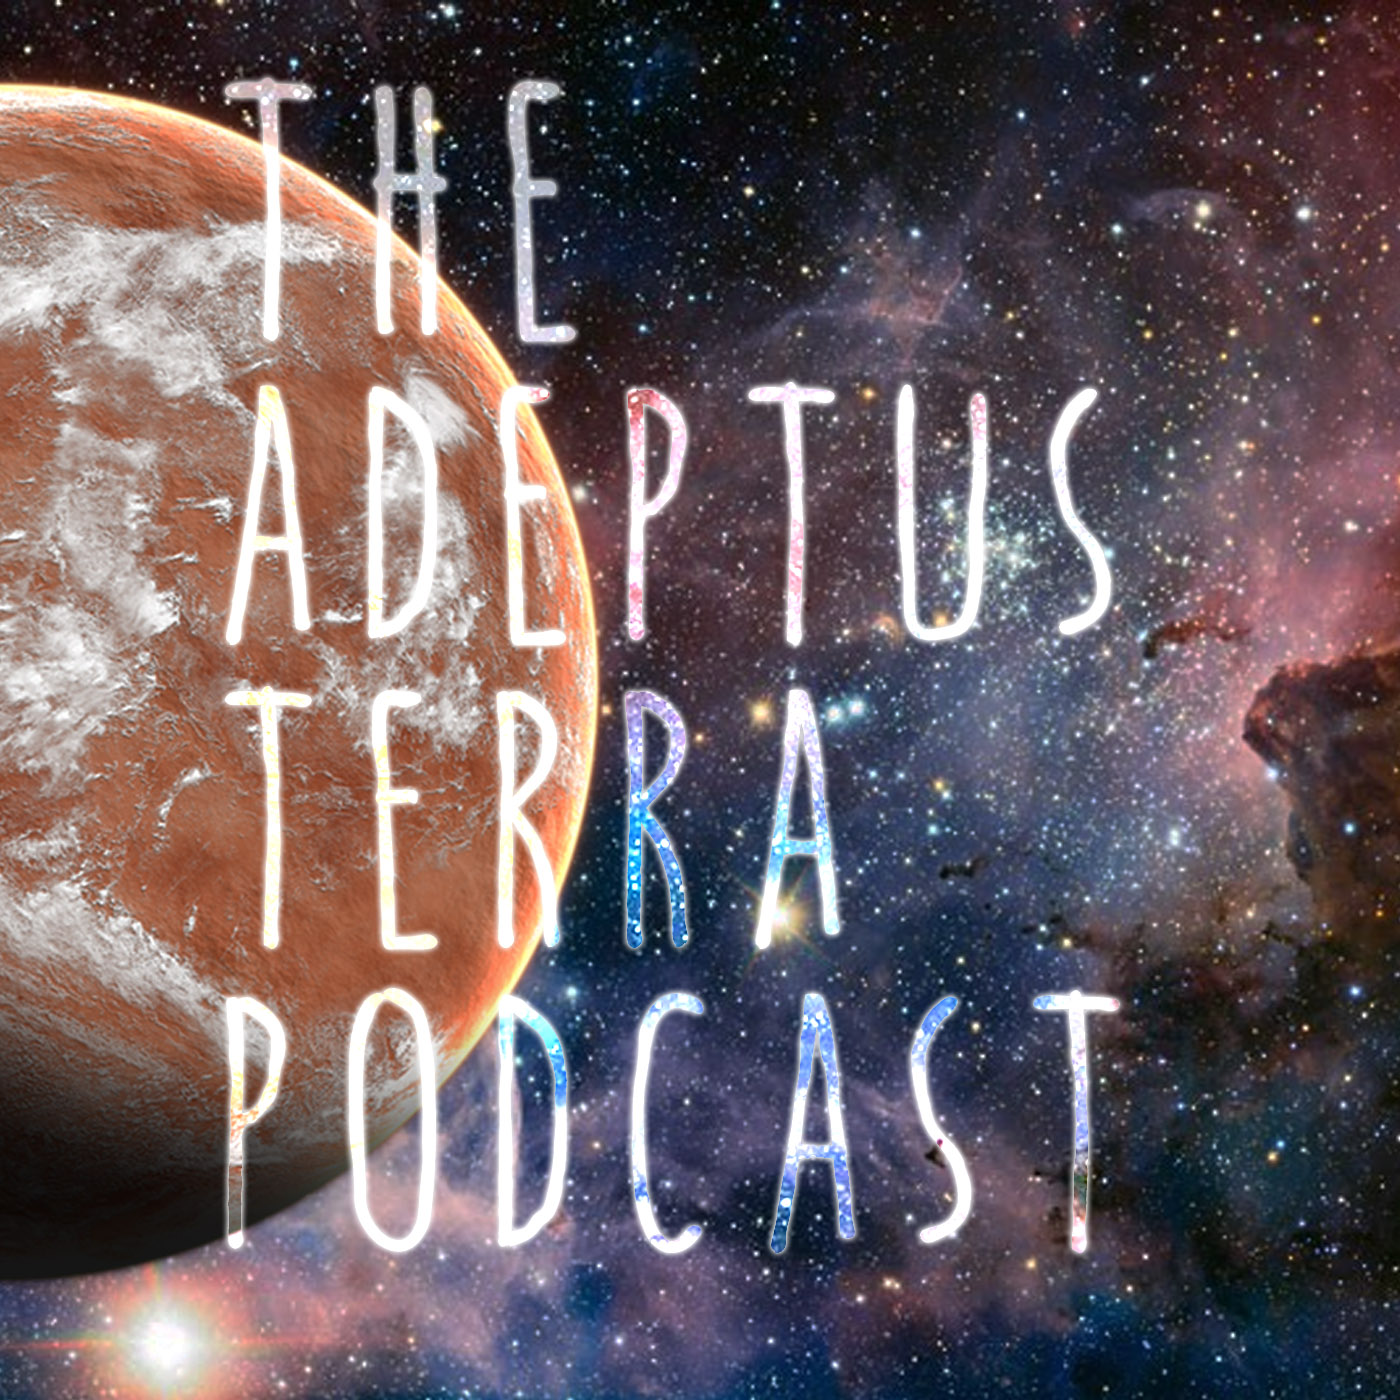 The Adeptus Terra Podcast Episode 12 'Spoilers!!'